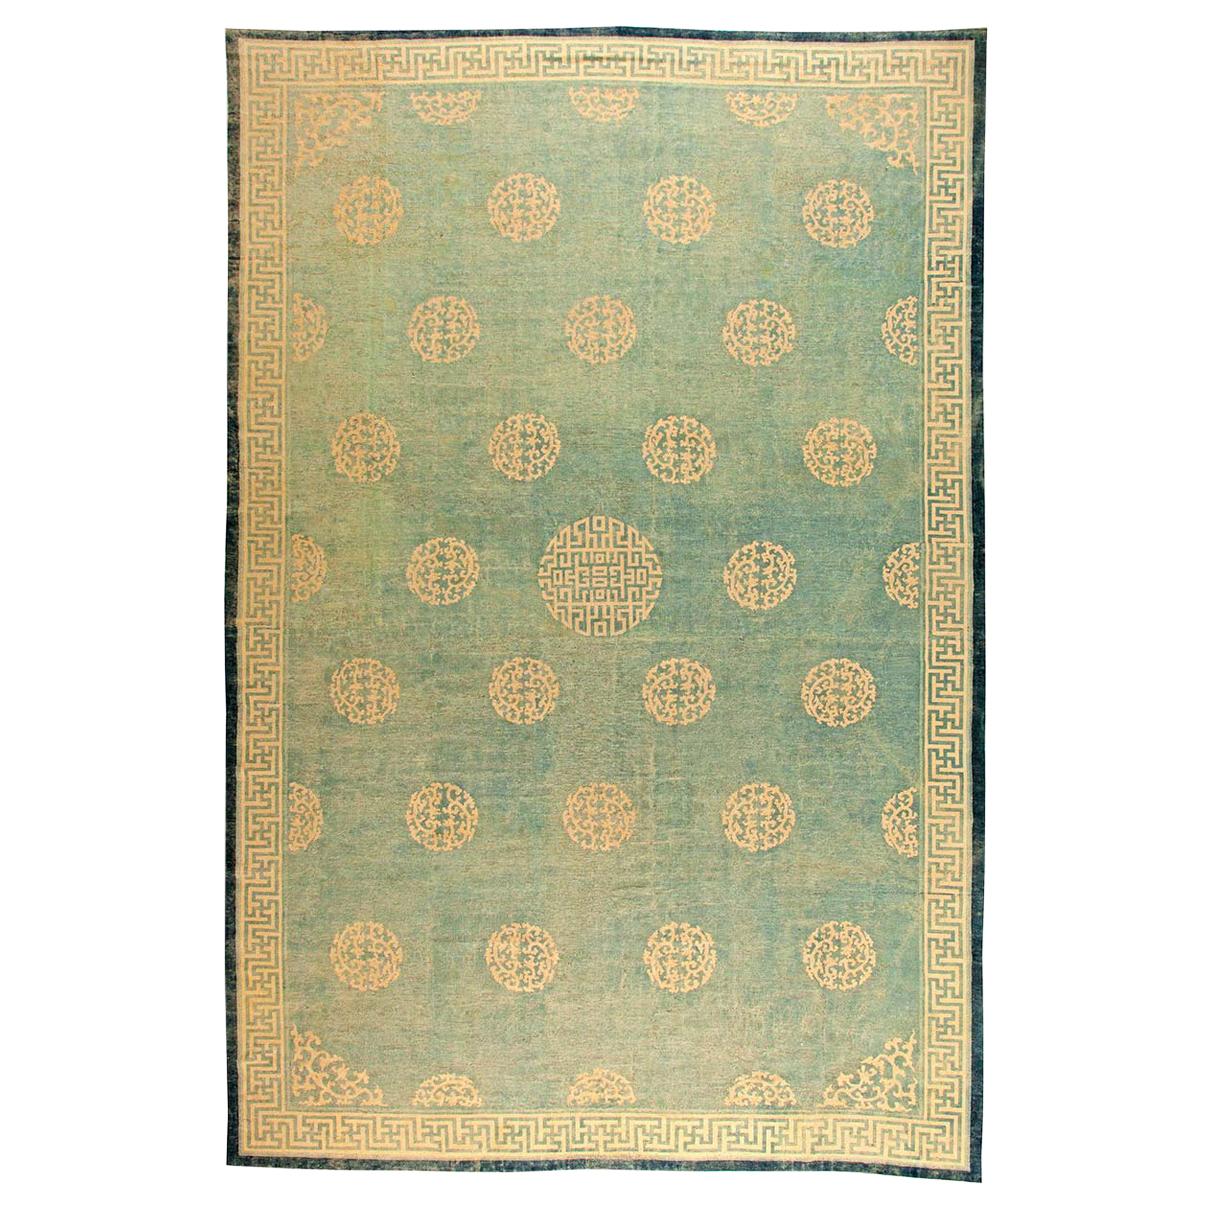 Grand tapis chinois vert du 19ème siècle ajusté